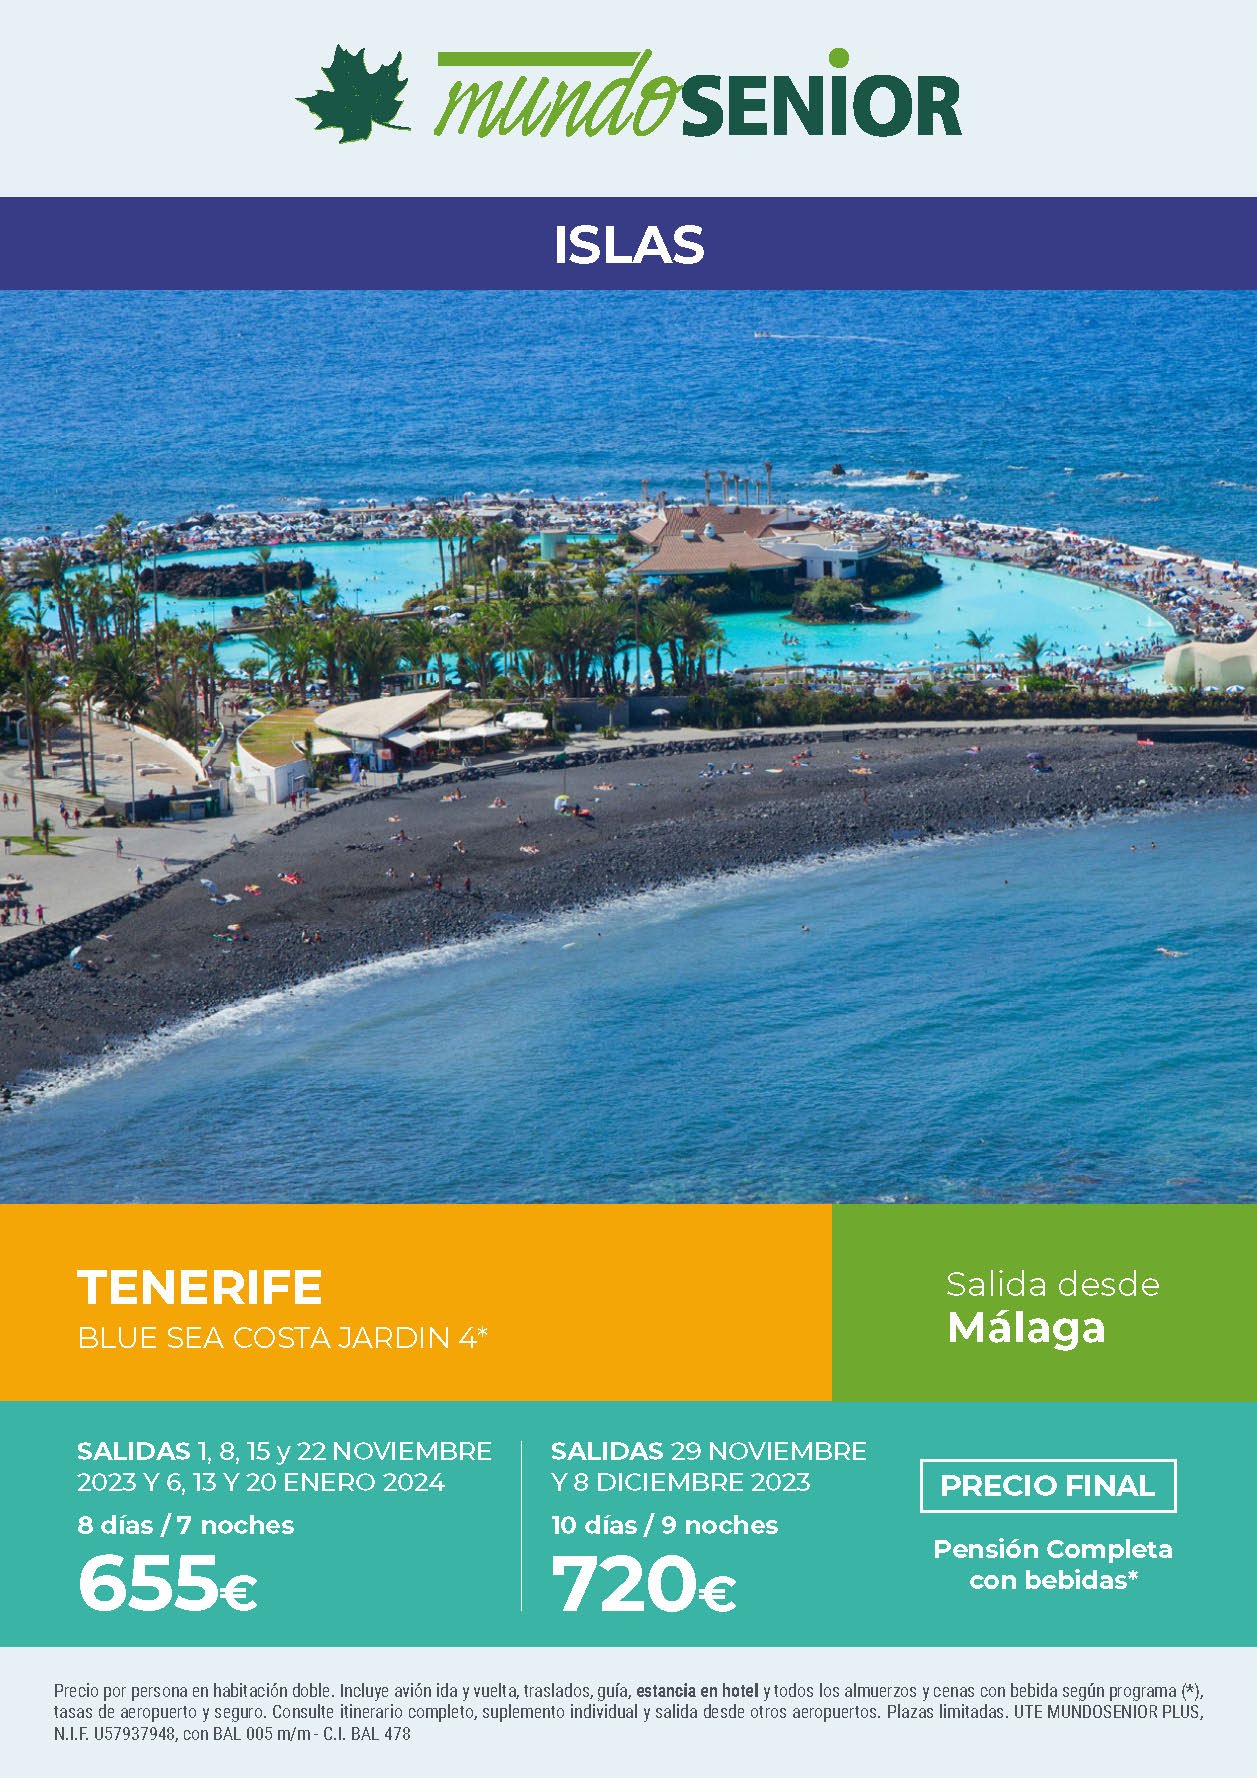 Oferta Mundo Senior Estancia en Tenerife 8 dias hotel 4 estrellas pension completa salidas noviembre diciembre 2023 enero 2024 desde Malaga